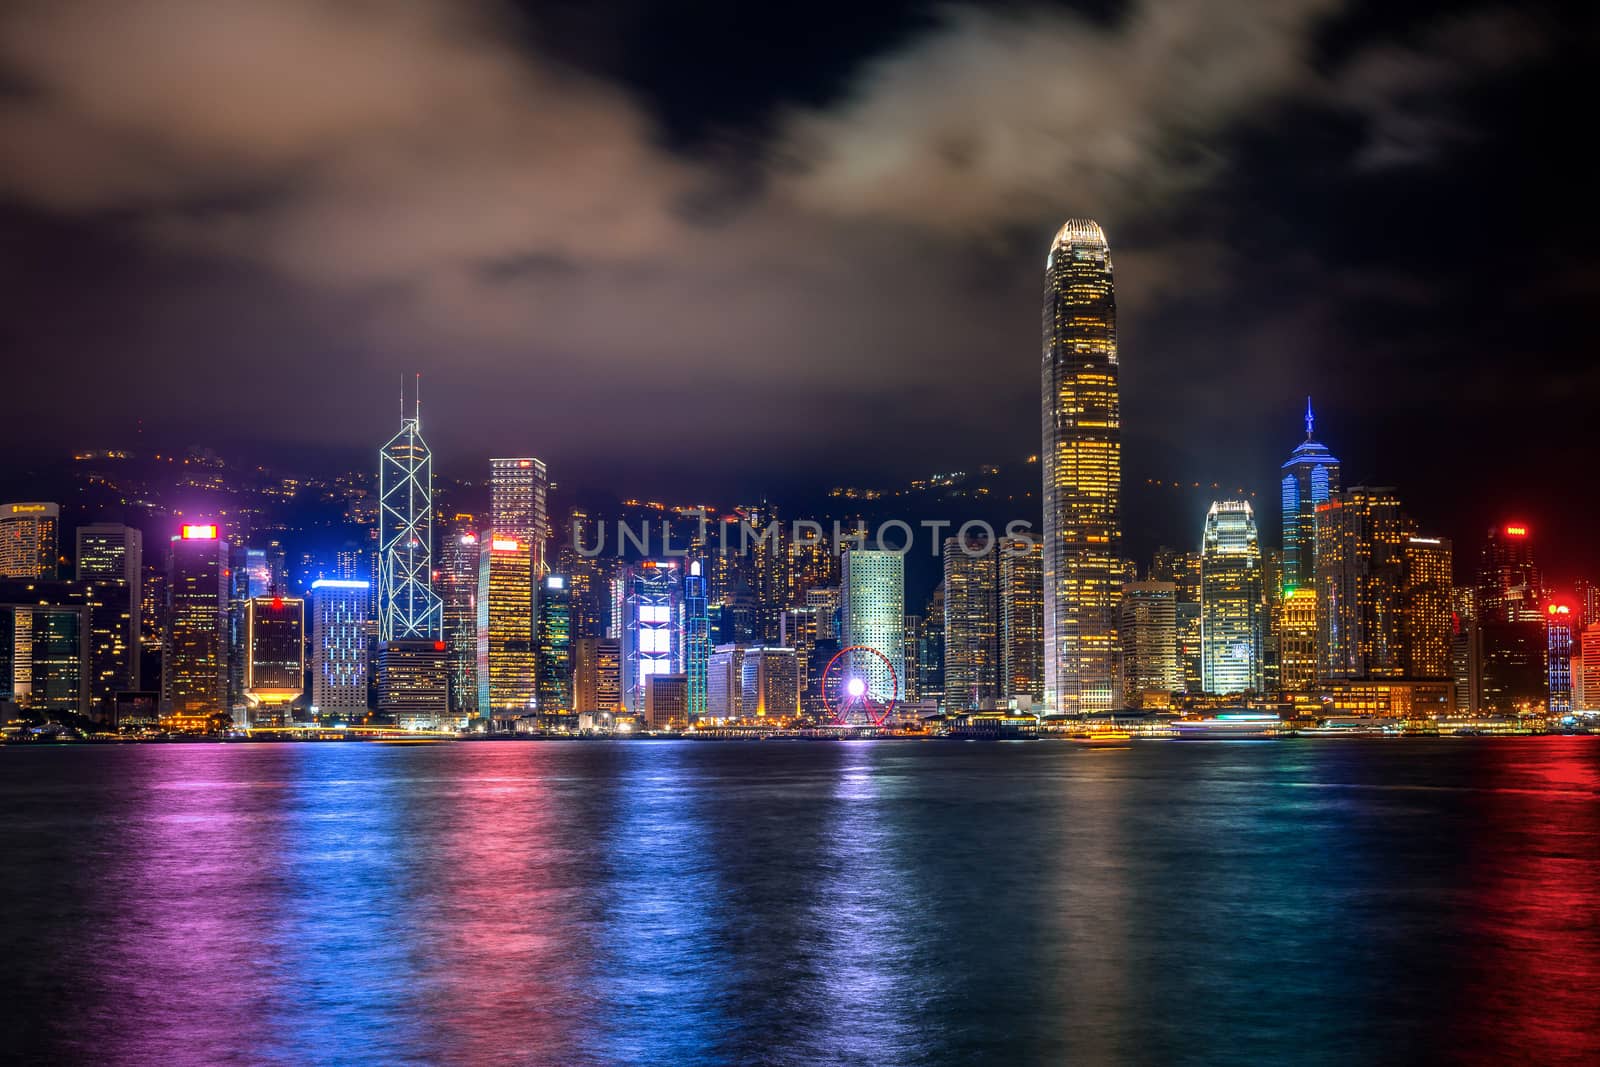 Hong Kong cityscape at night.